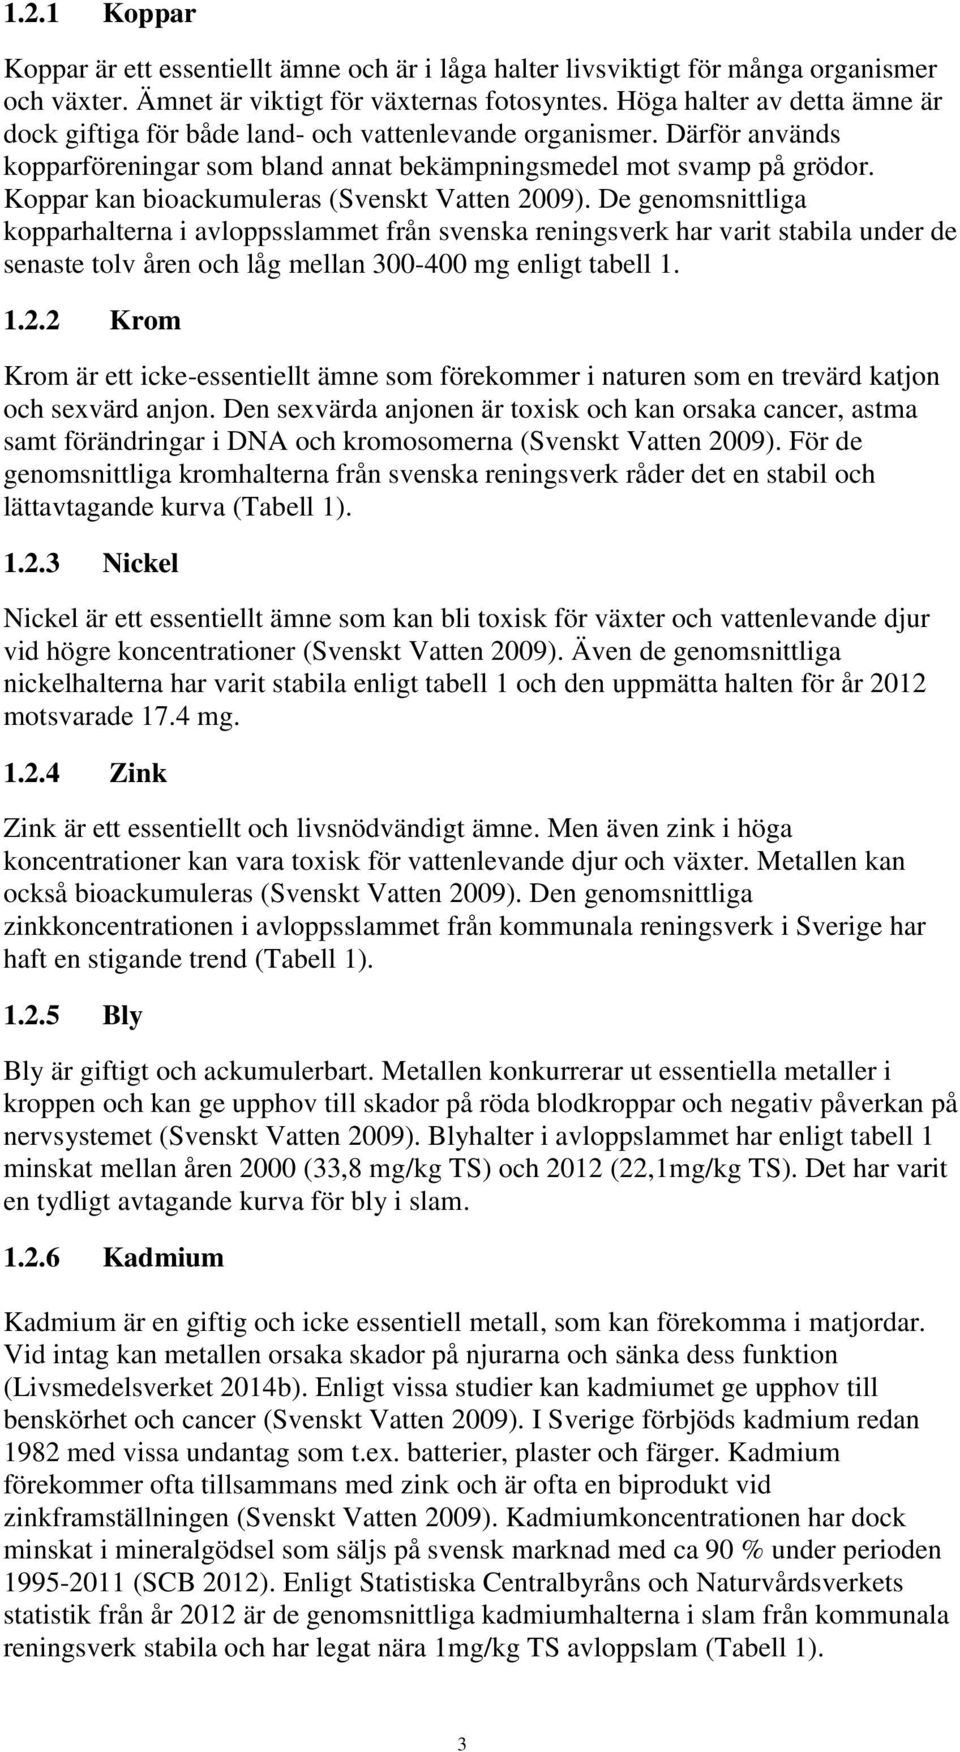 Koppar kan bioackumuleras (Svenskt Vatten 2009).